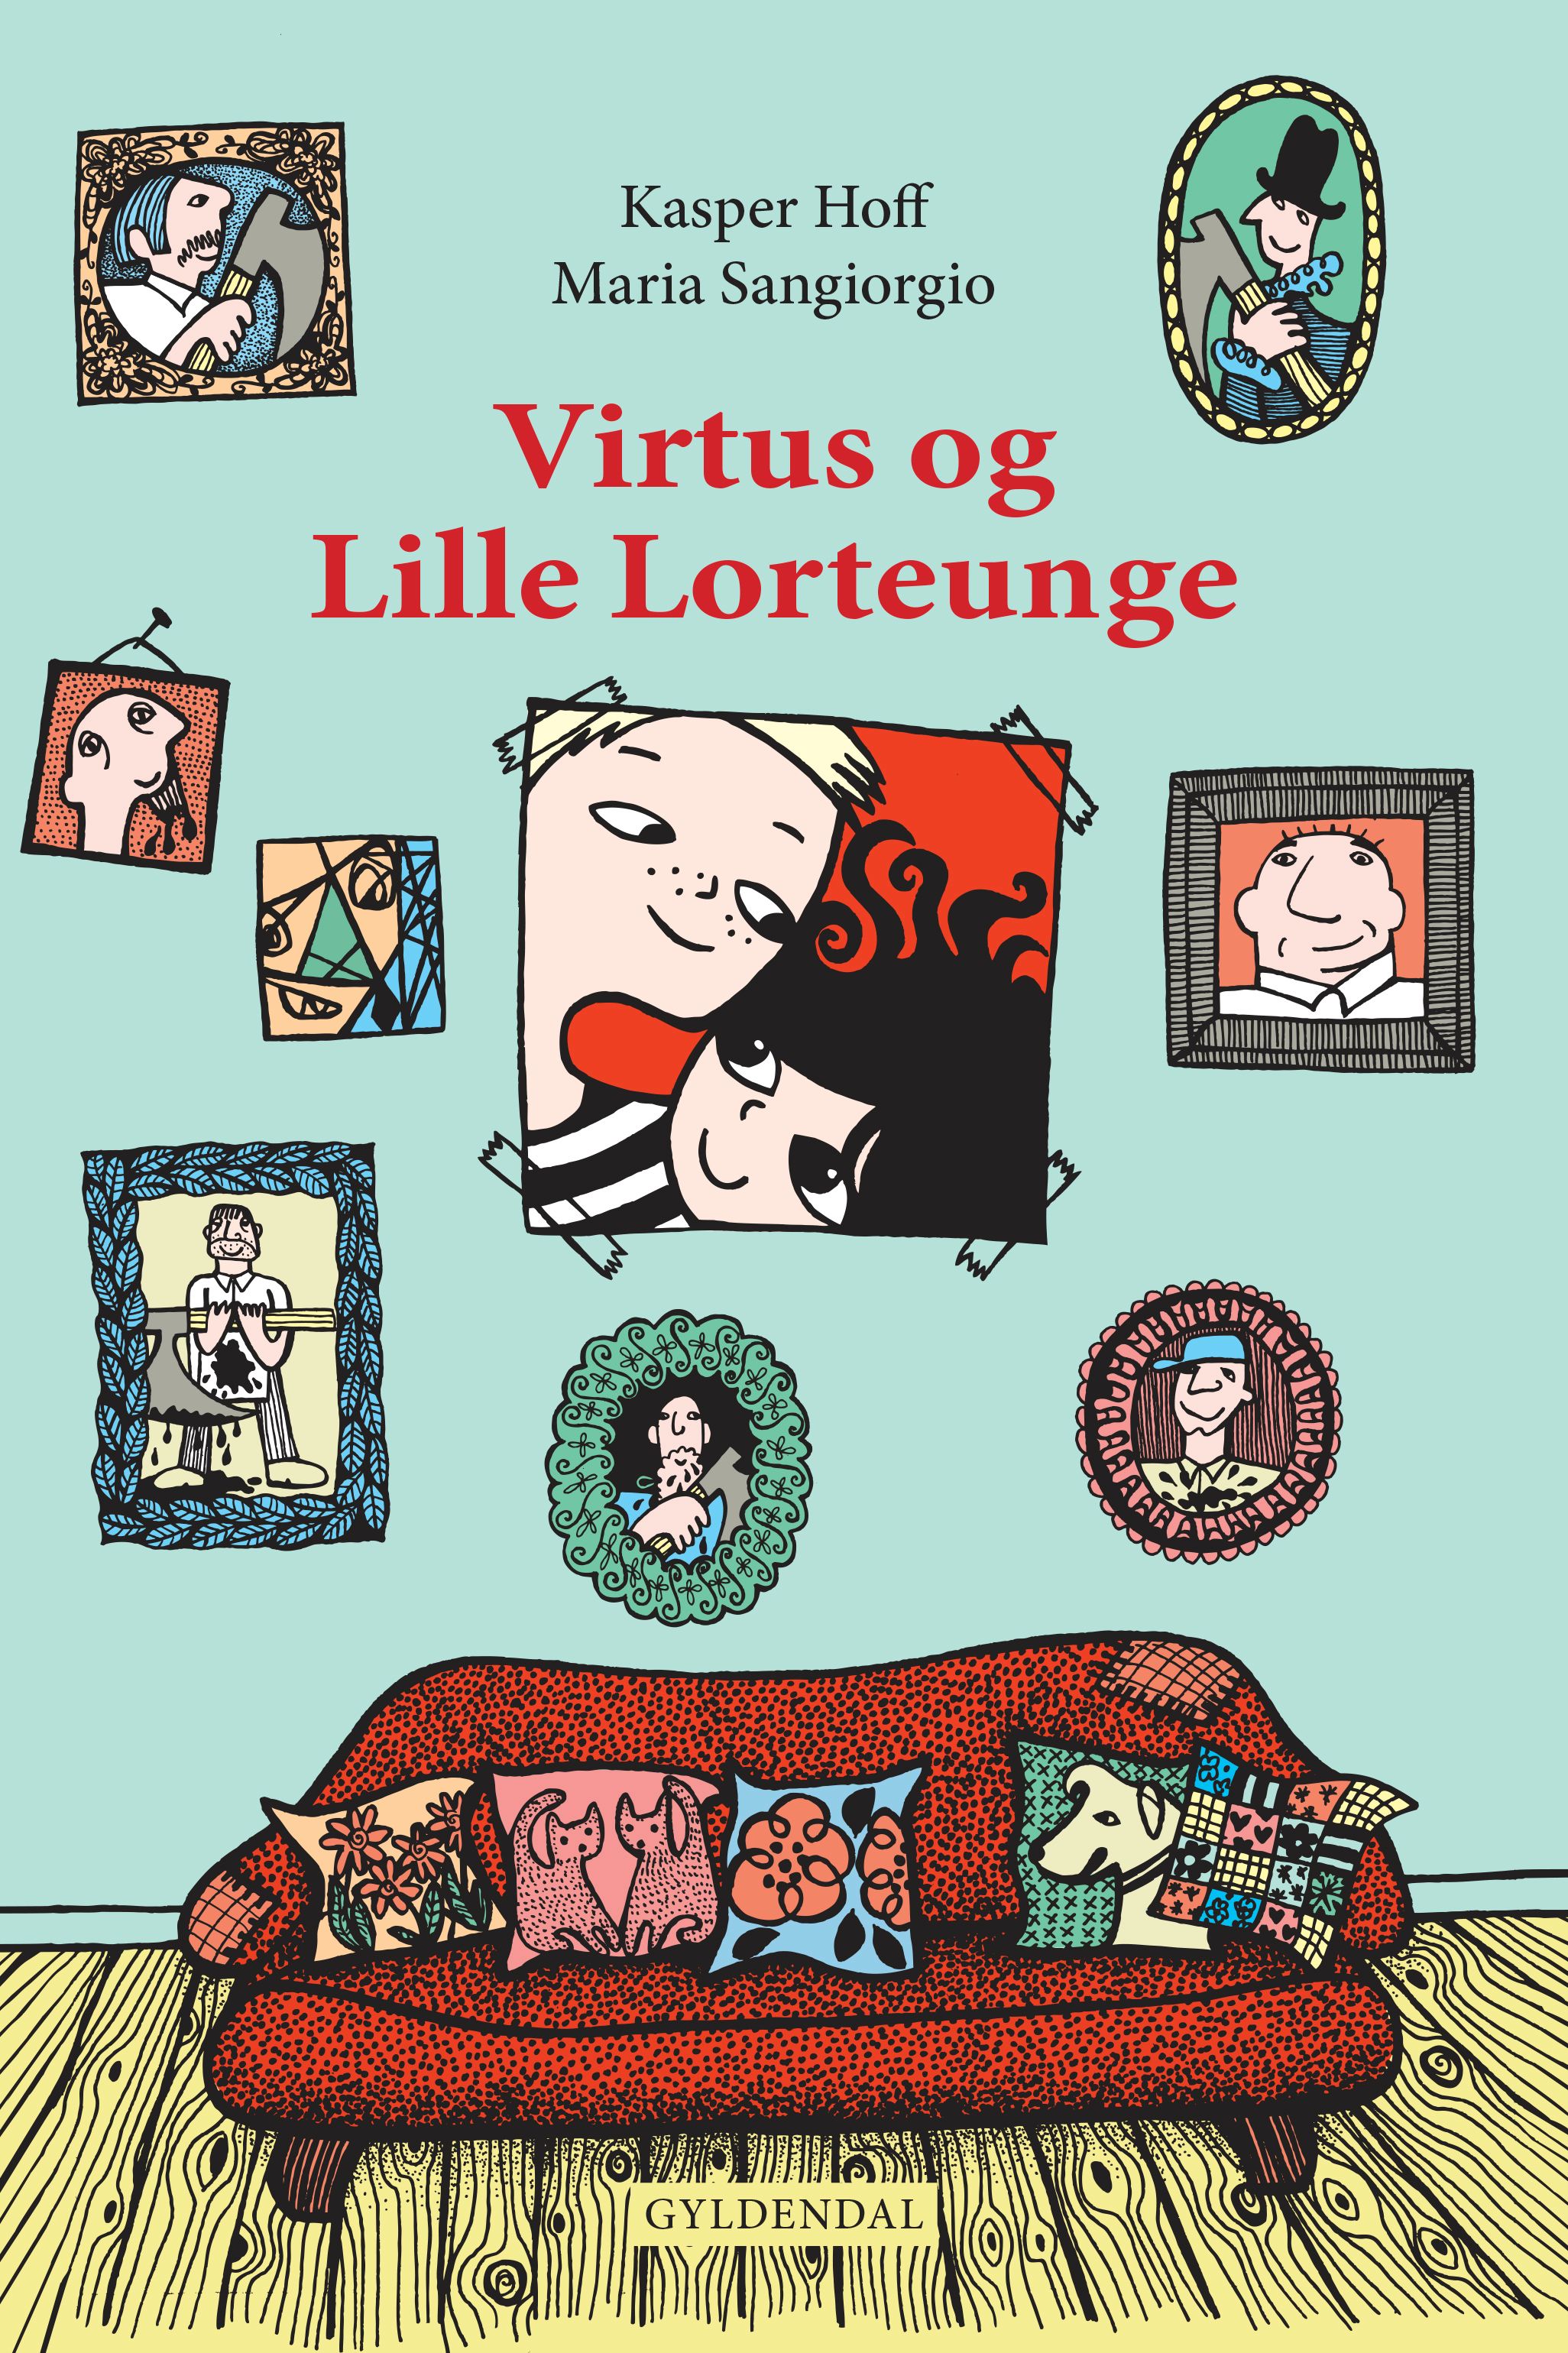 Virtus og Lille Lorteunge, eBook by Kasper Hoff